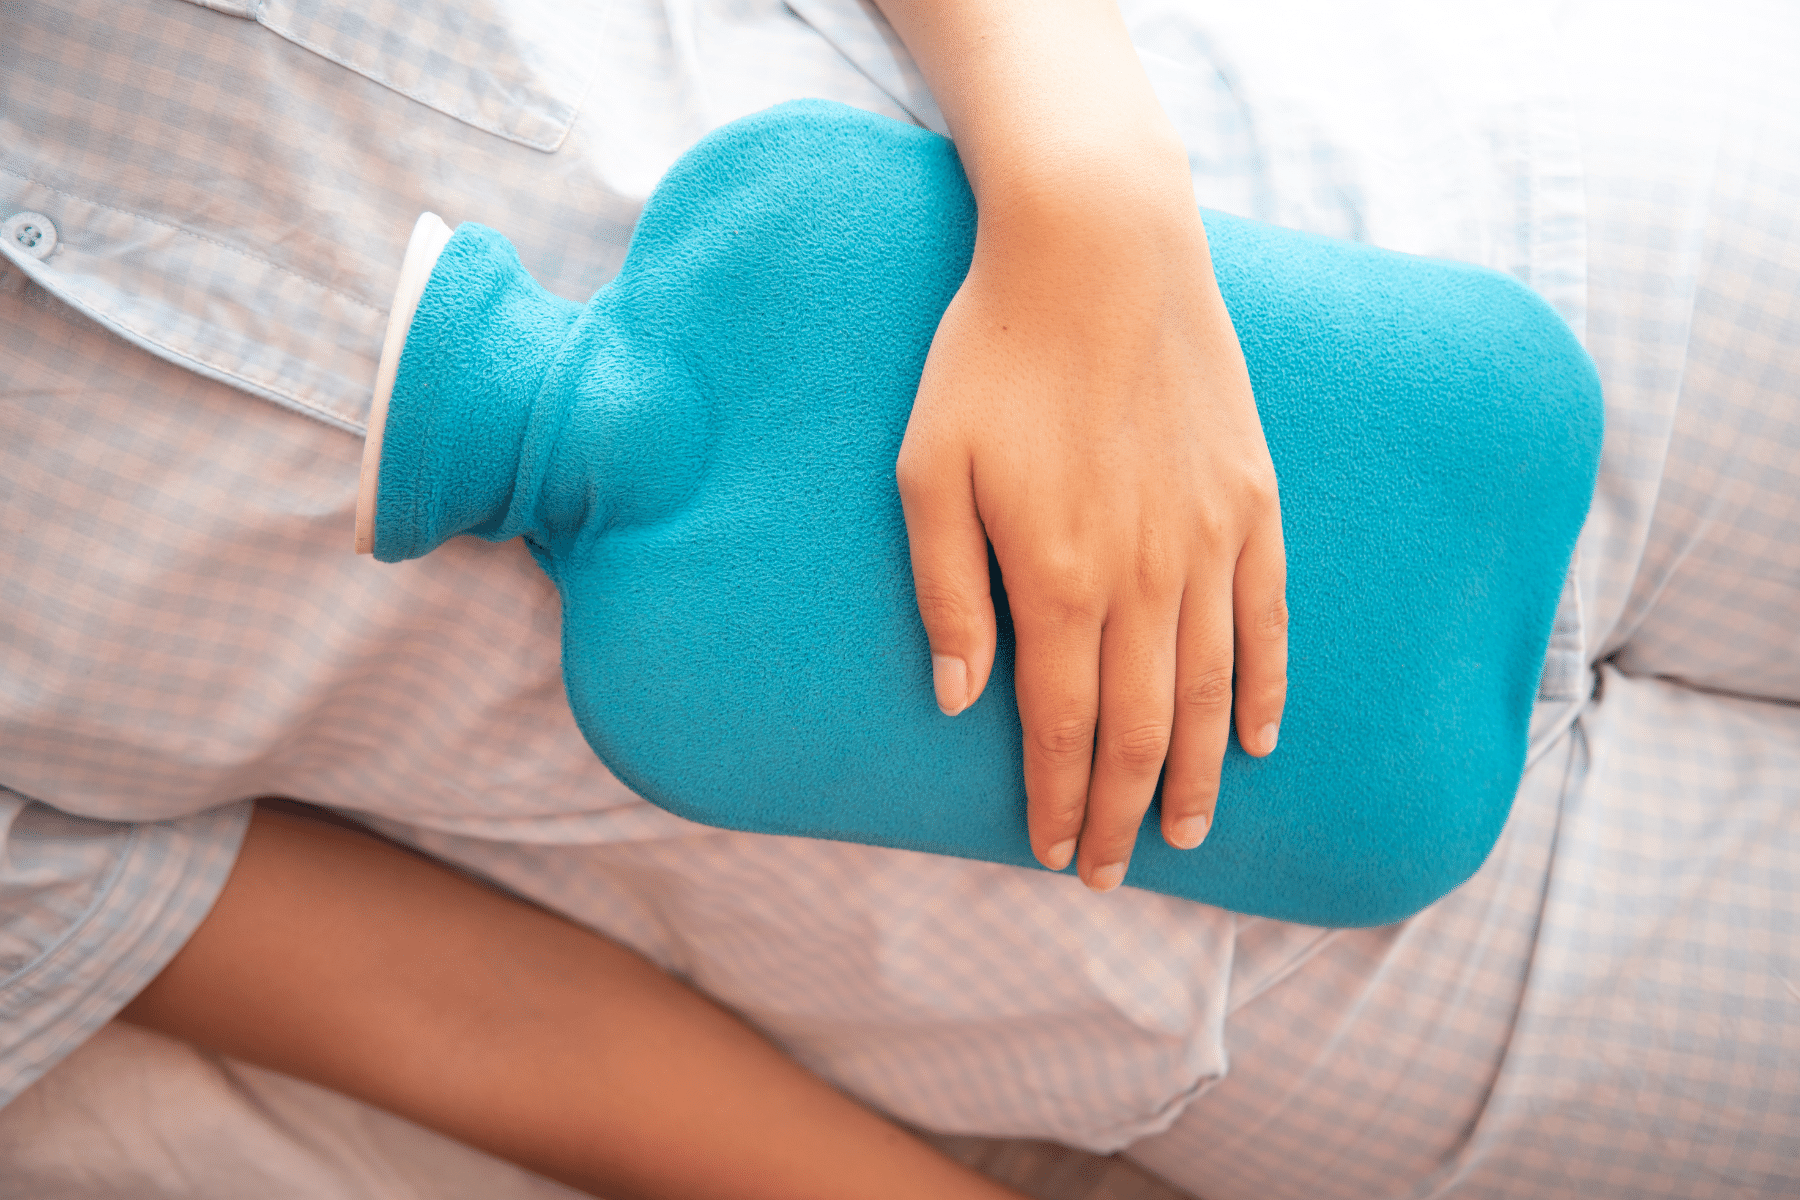 hamilelikte sıcak su torbası kullanmak zararlı mı?